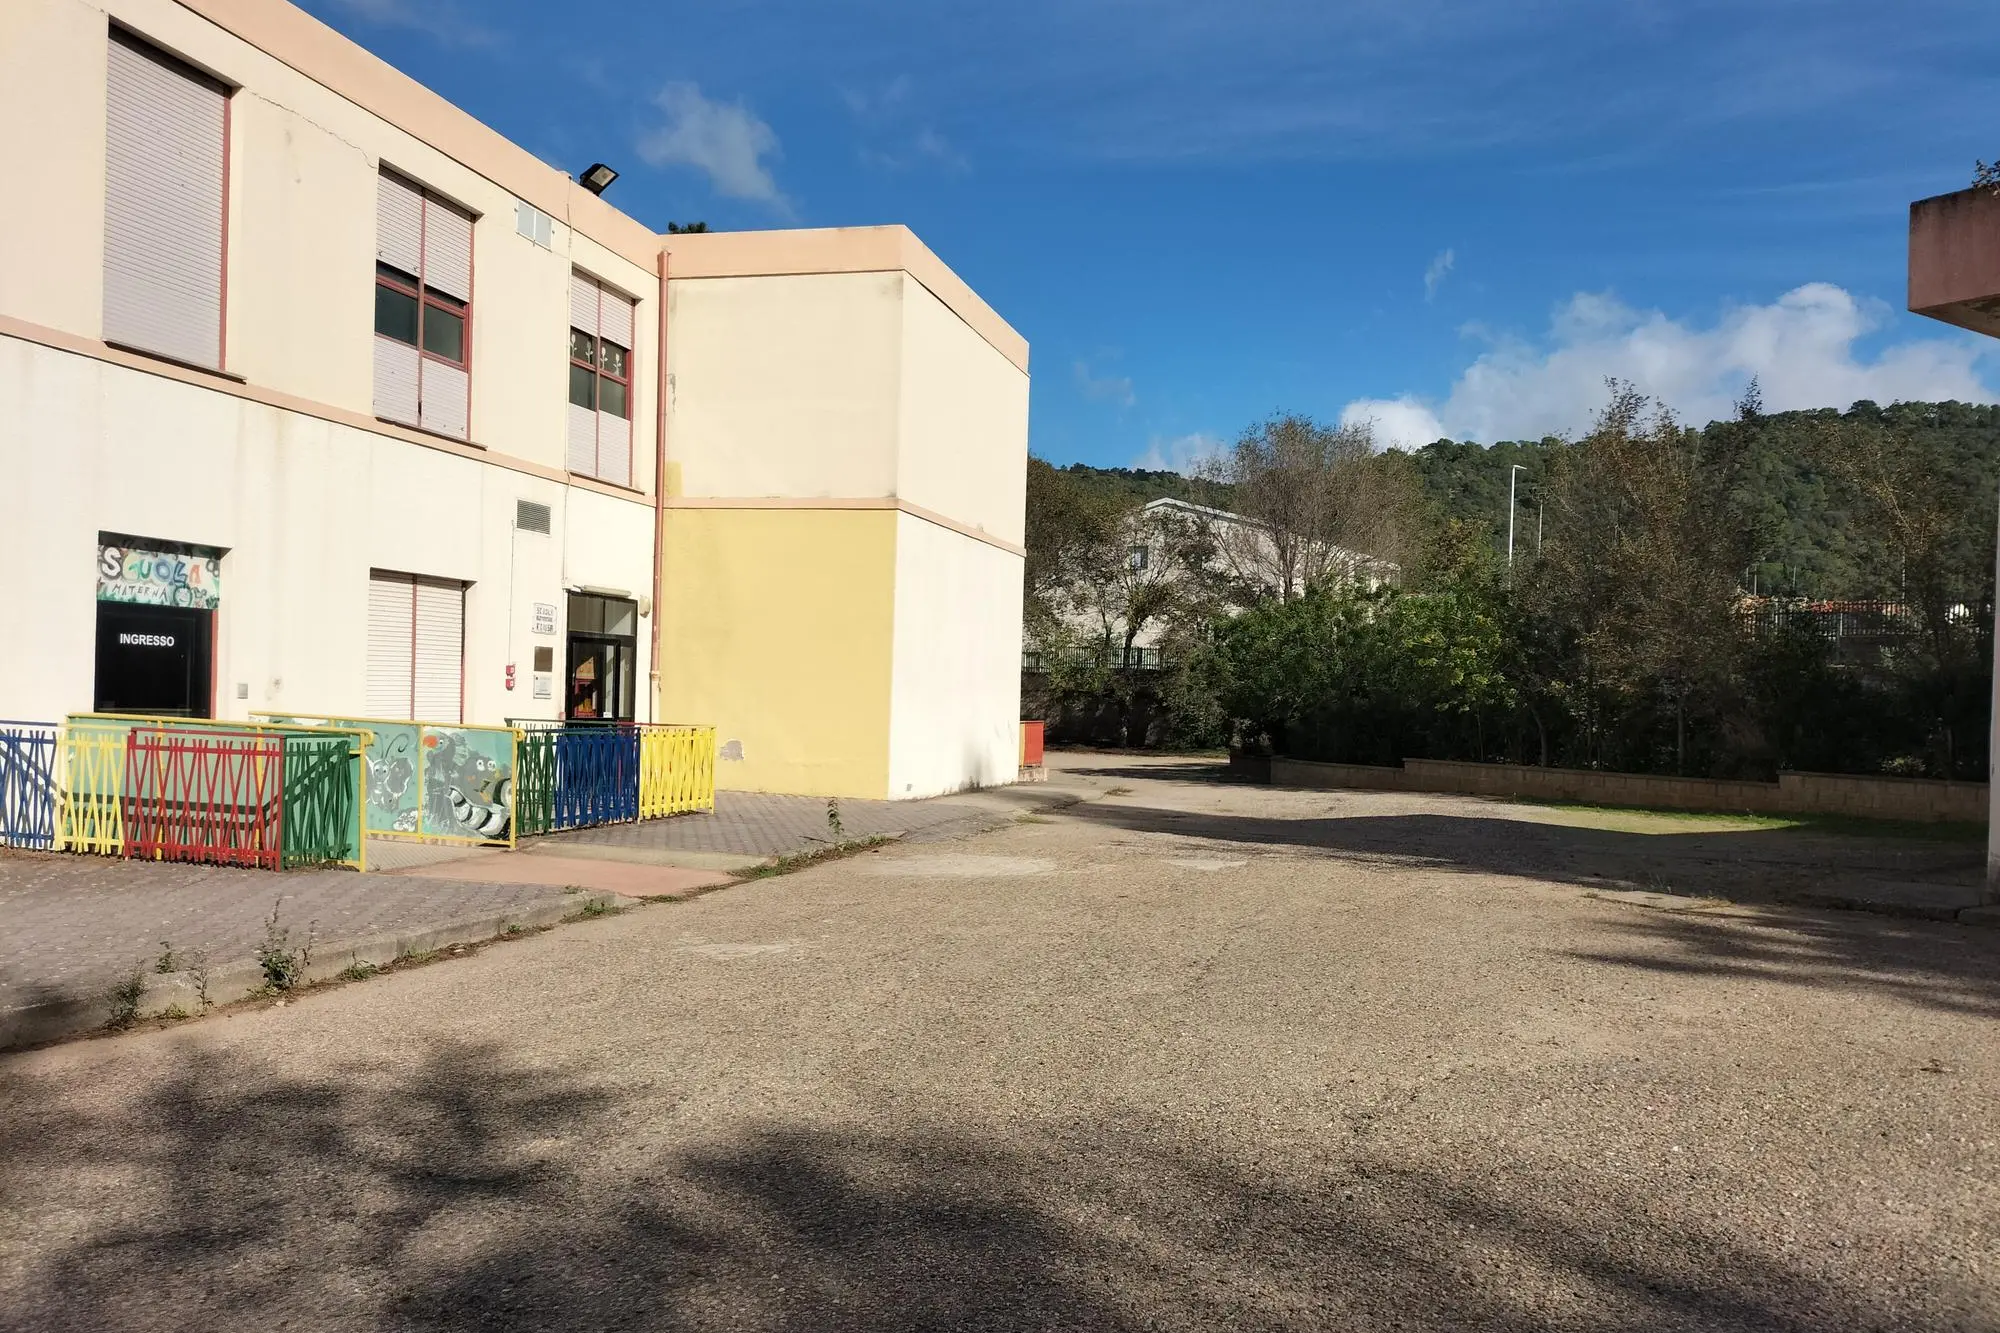 La scuola Ciusa dove sorgerà il nuovo asilo (foto Scano)